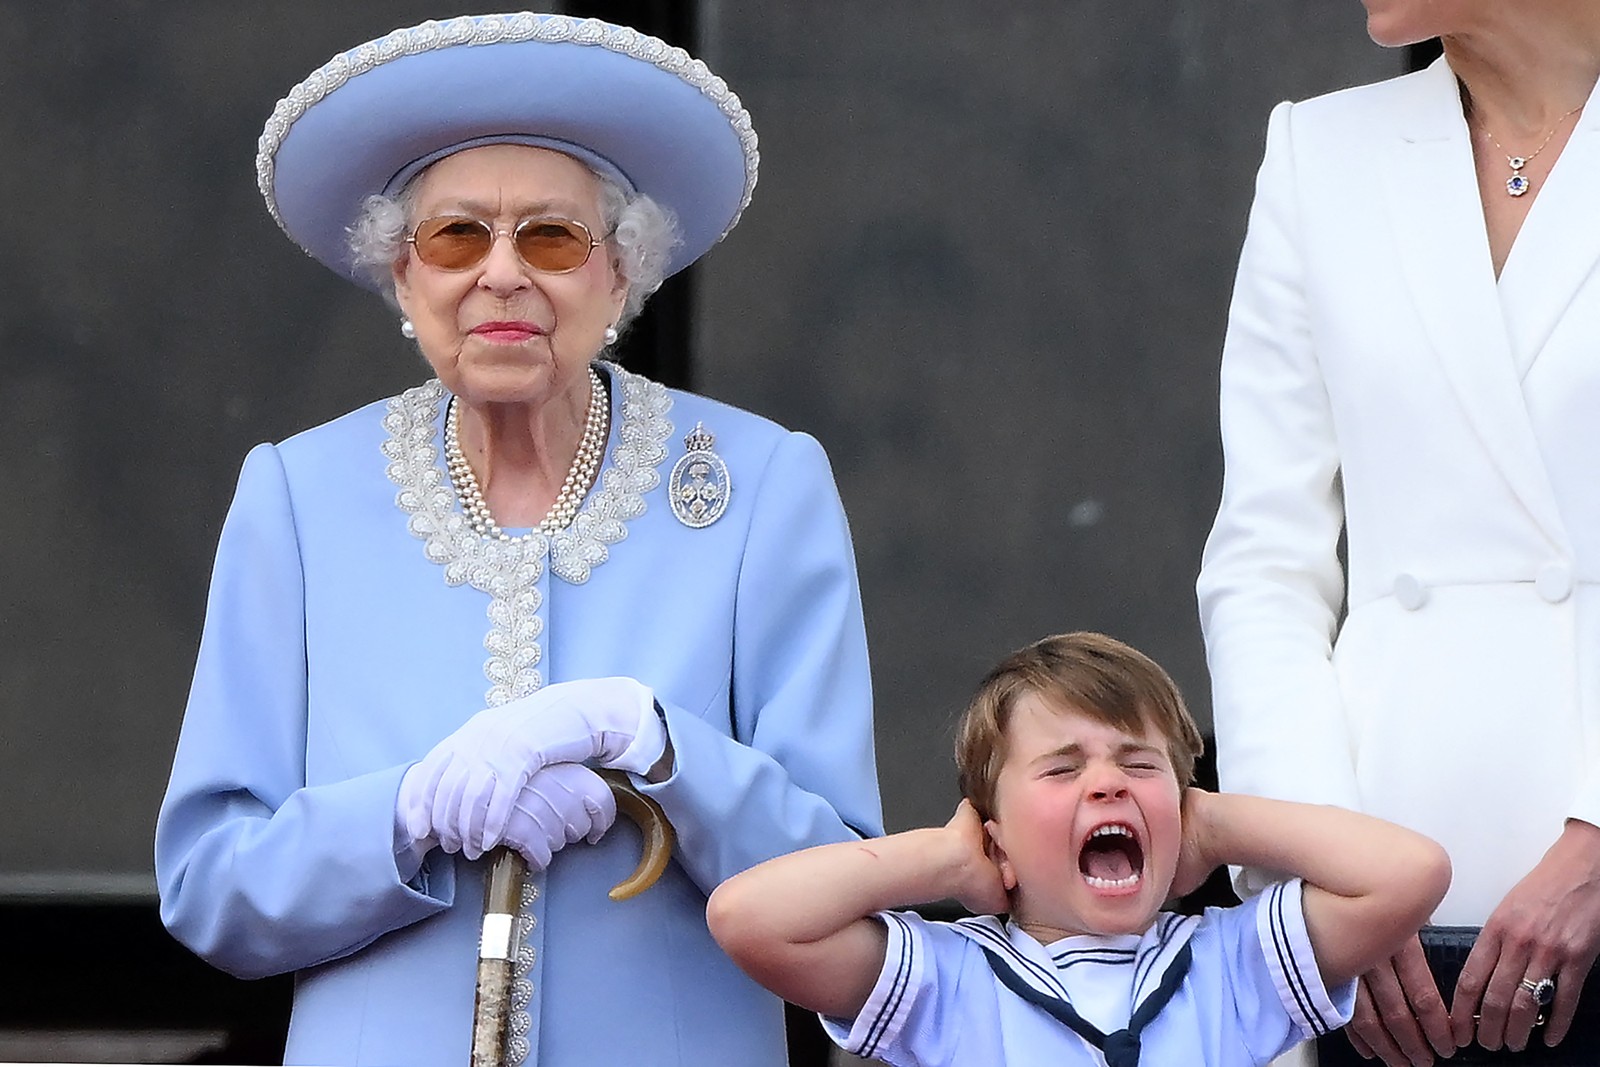 O príncipe britânico Louis de Cambridge ao lado da rainha Elizabeth II, durante as celebrações do jubileu de platina da monarca, em Londres, em 2 de junho.  — Foto: Daniel LEAL / AFP